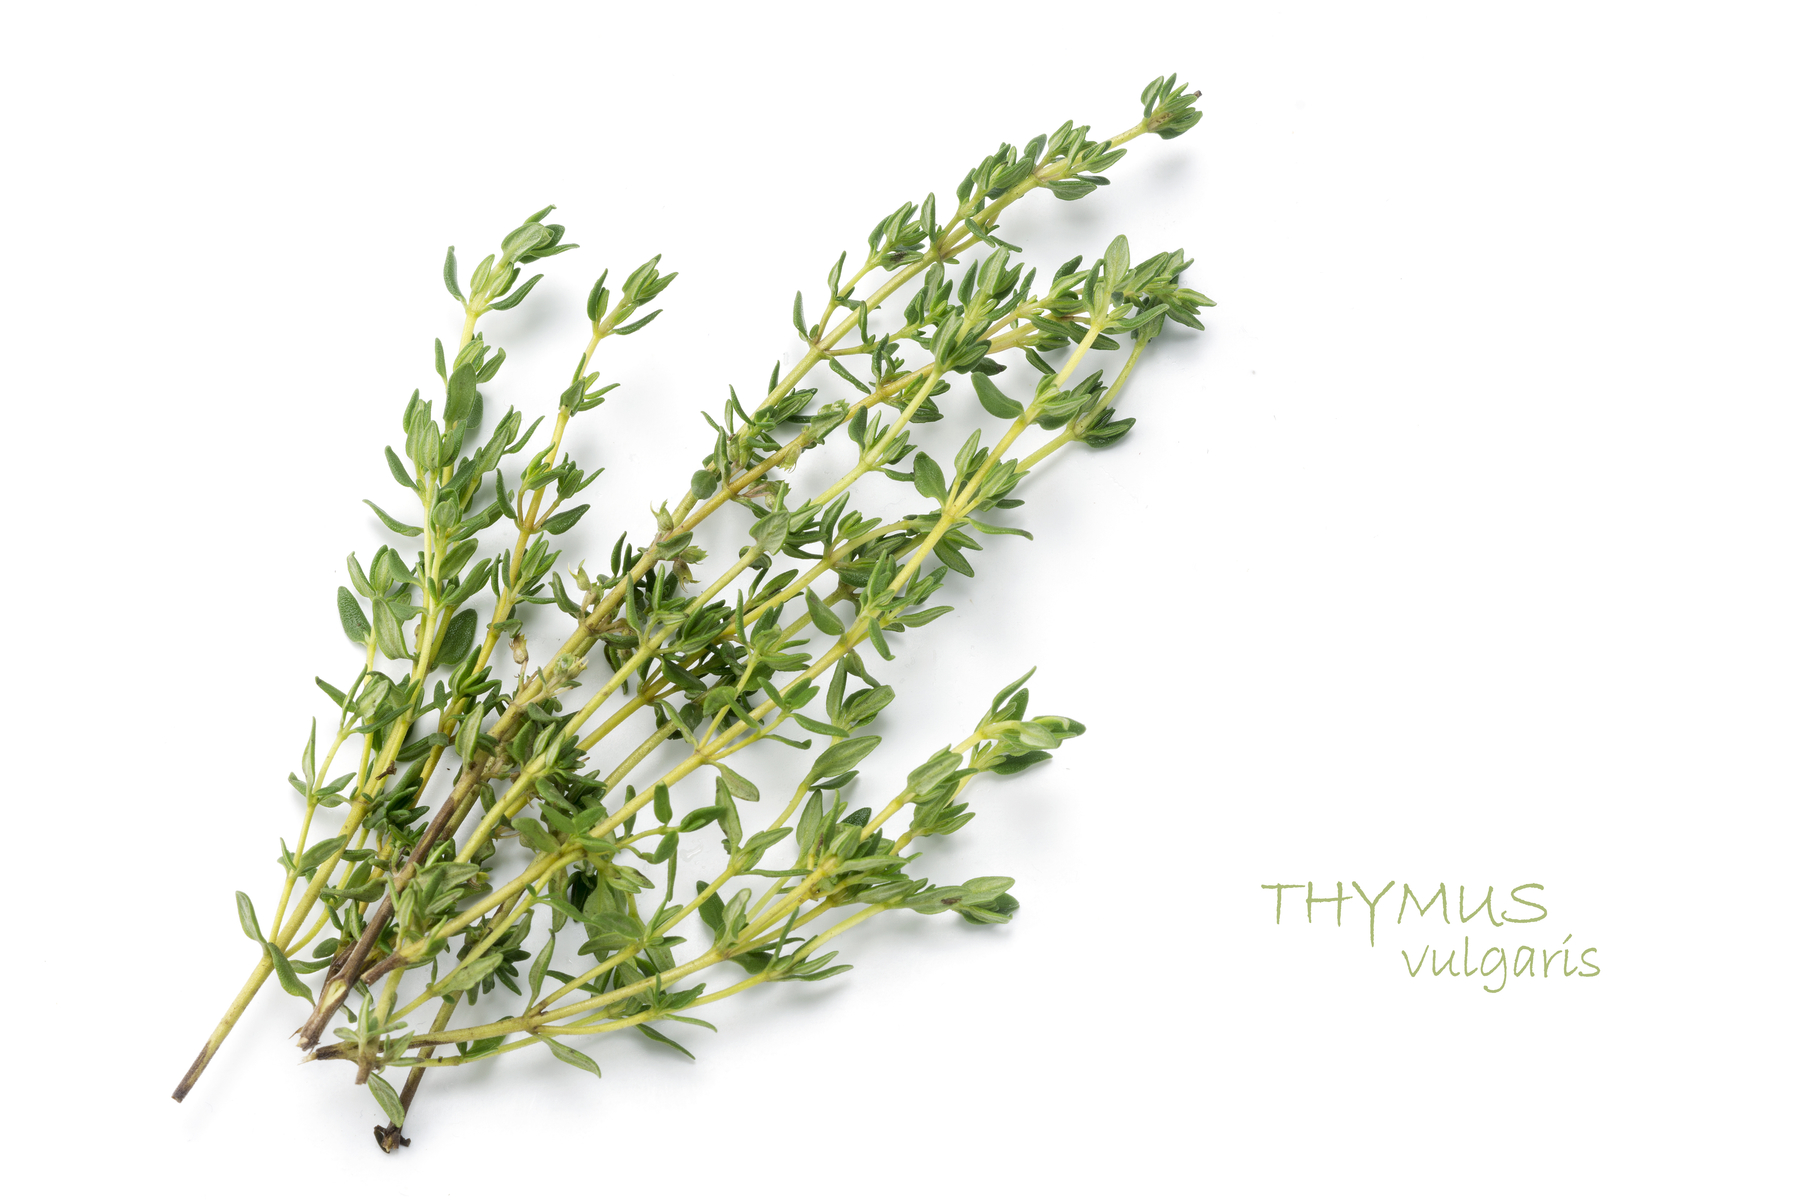 Thymus vulgaris (Common Thyme)